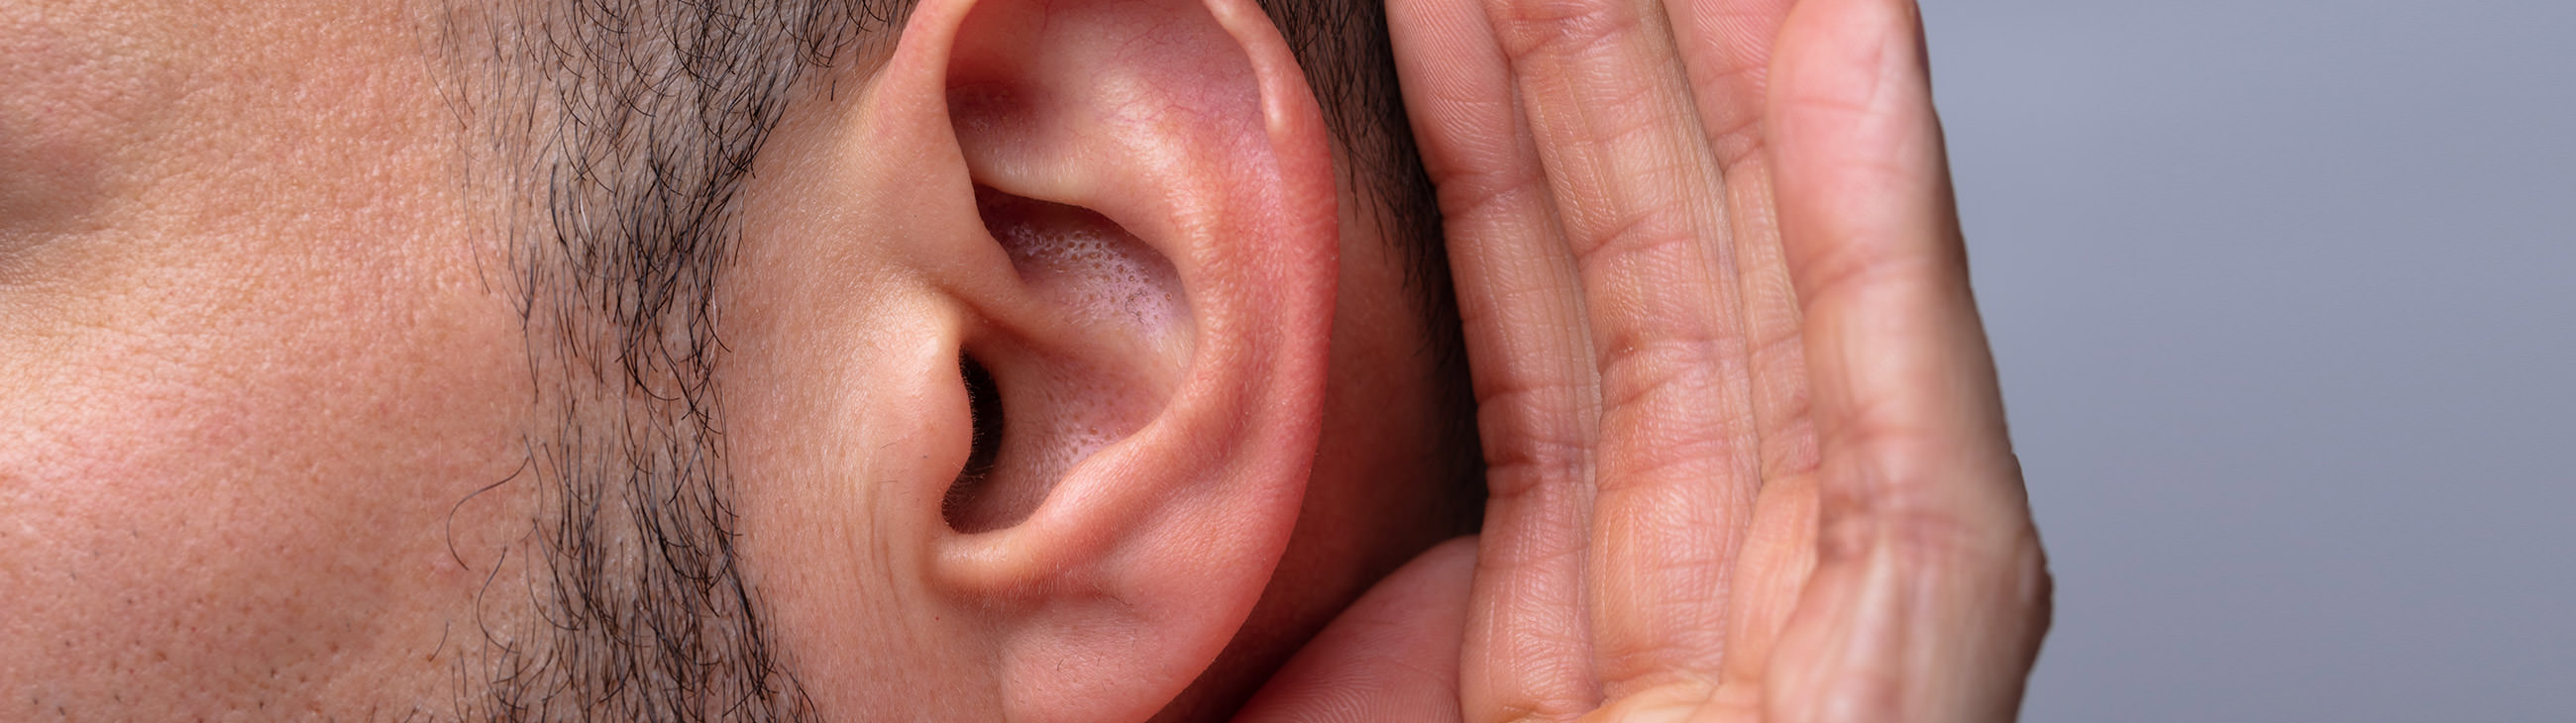 El eczema en las orejas